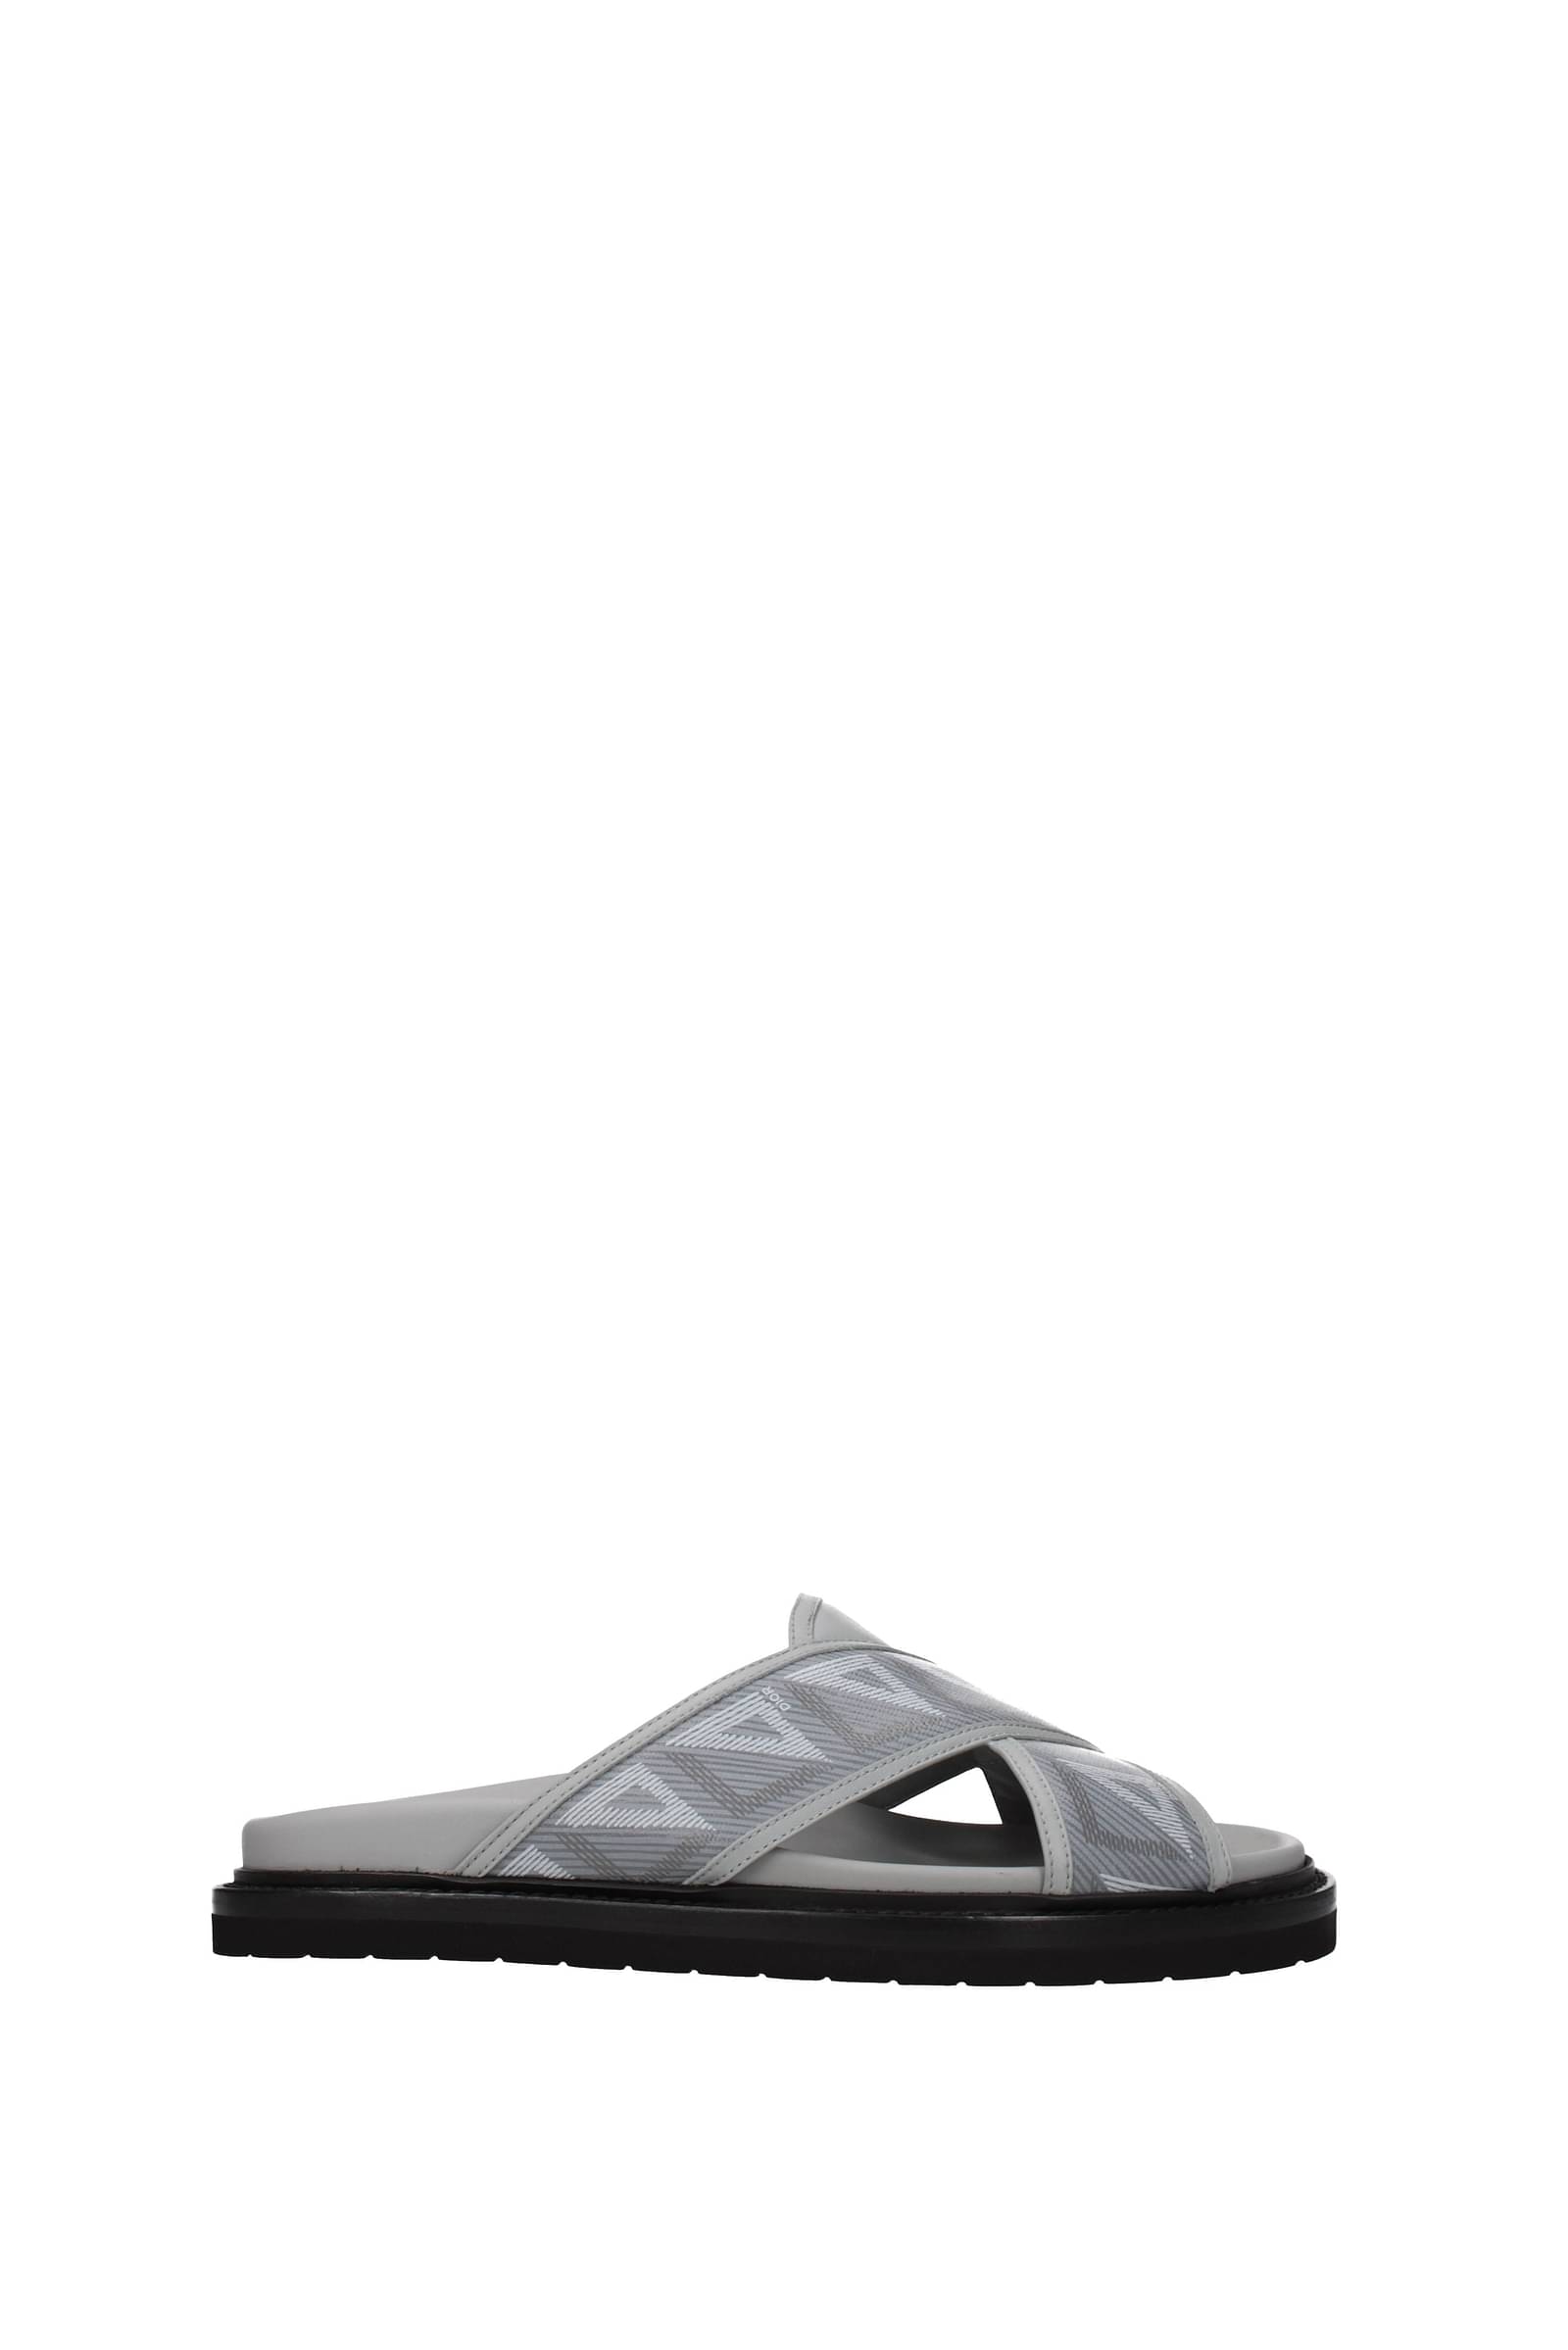 Dior Sandals  FlipFlops for Men  Poshmark